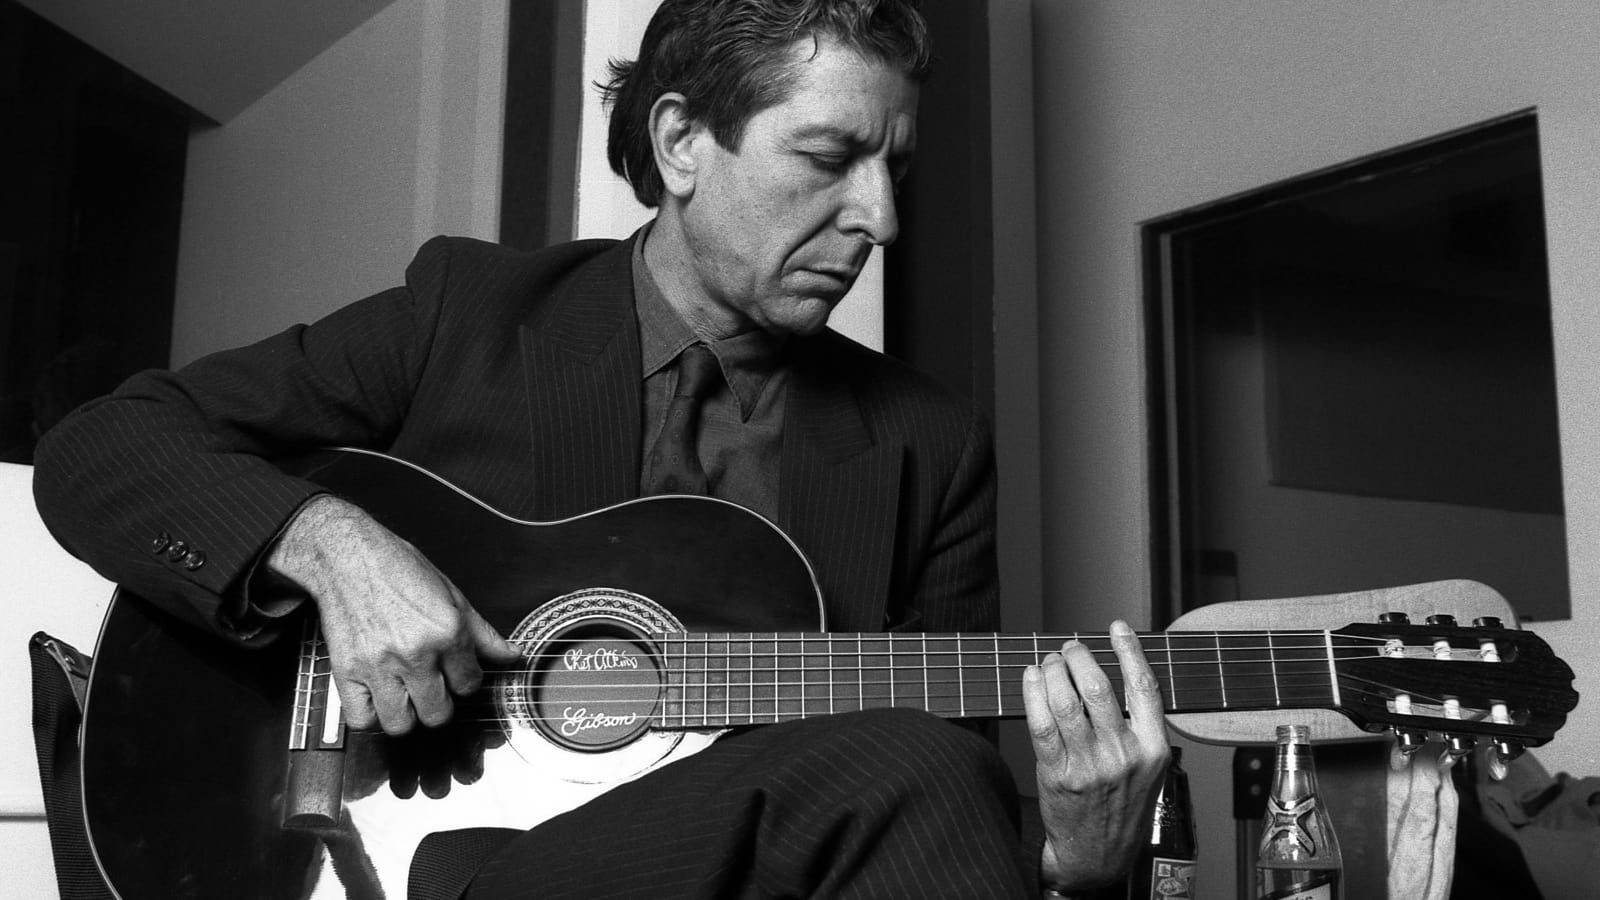 Hallelujah : Leonard Cohen, Bir Yolculuk, Bir Şarkı